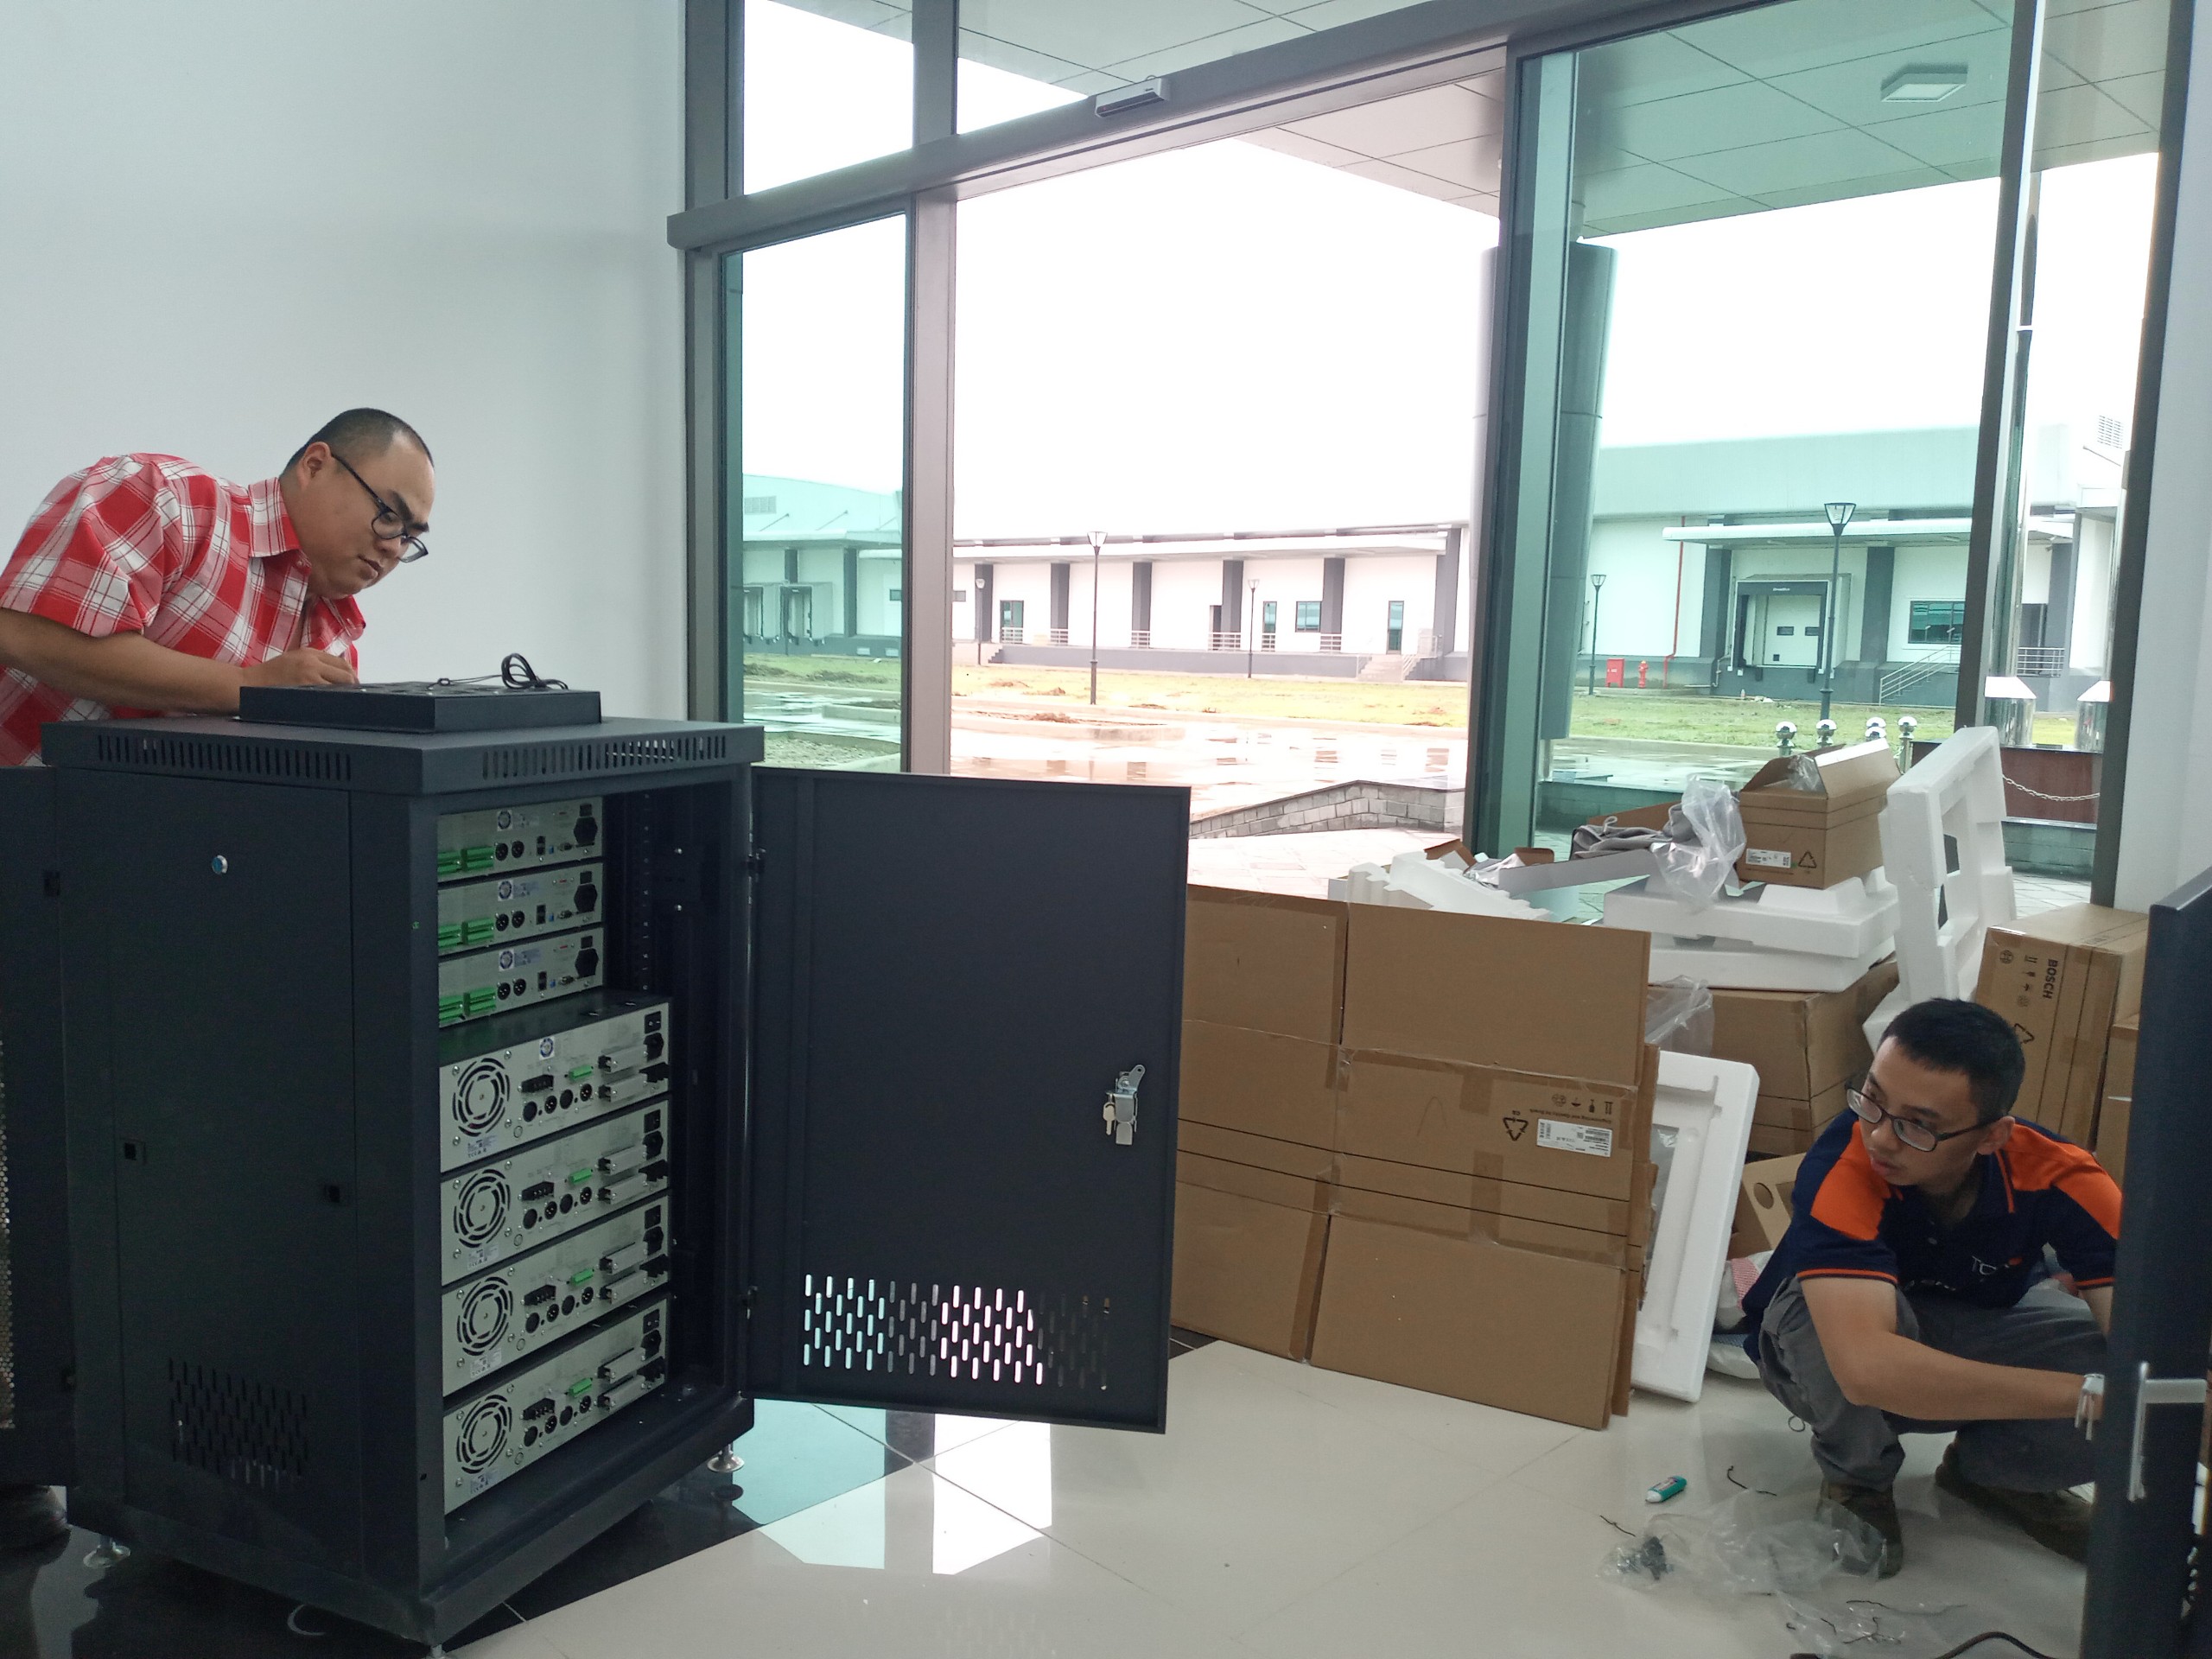 Lắp đặt âm thanh Bosch Plena VAS nhà máy sản xuất C.P Việt Nam tại KCN Phú Nghĩa, Hà Nội